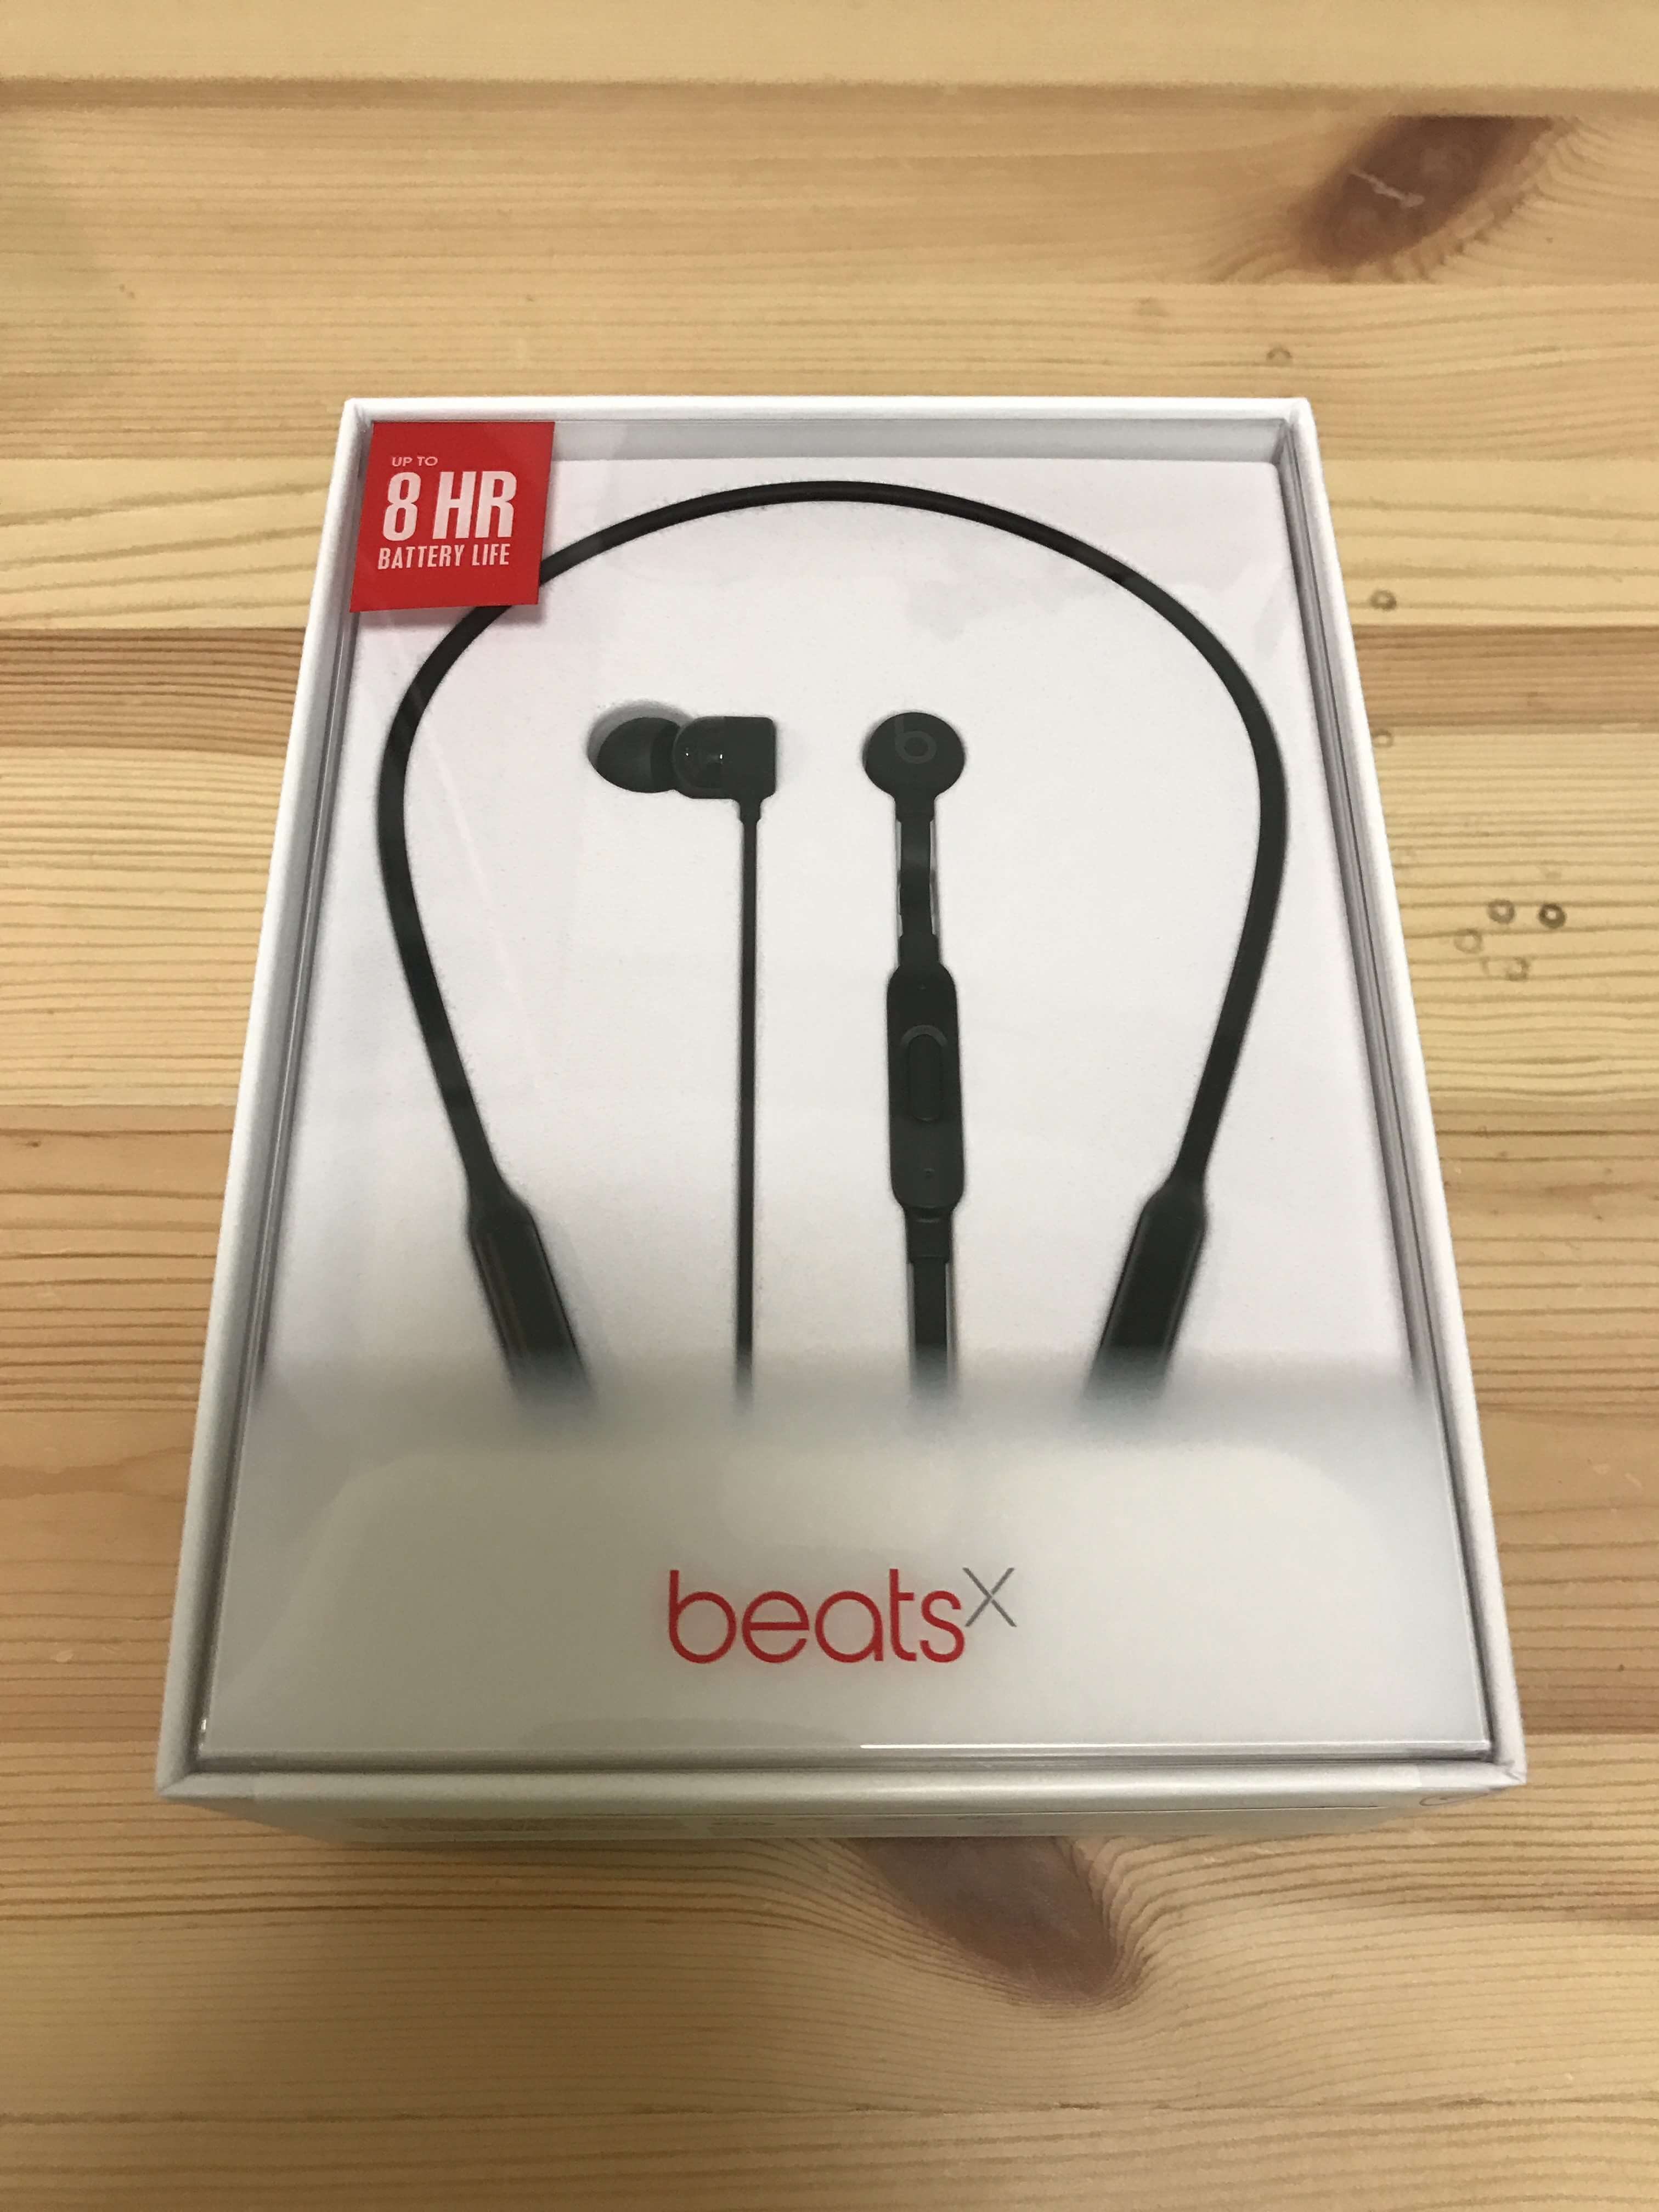 Beatsxがスリープから解除されない問題がファームウェアアップデートで